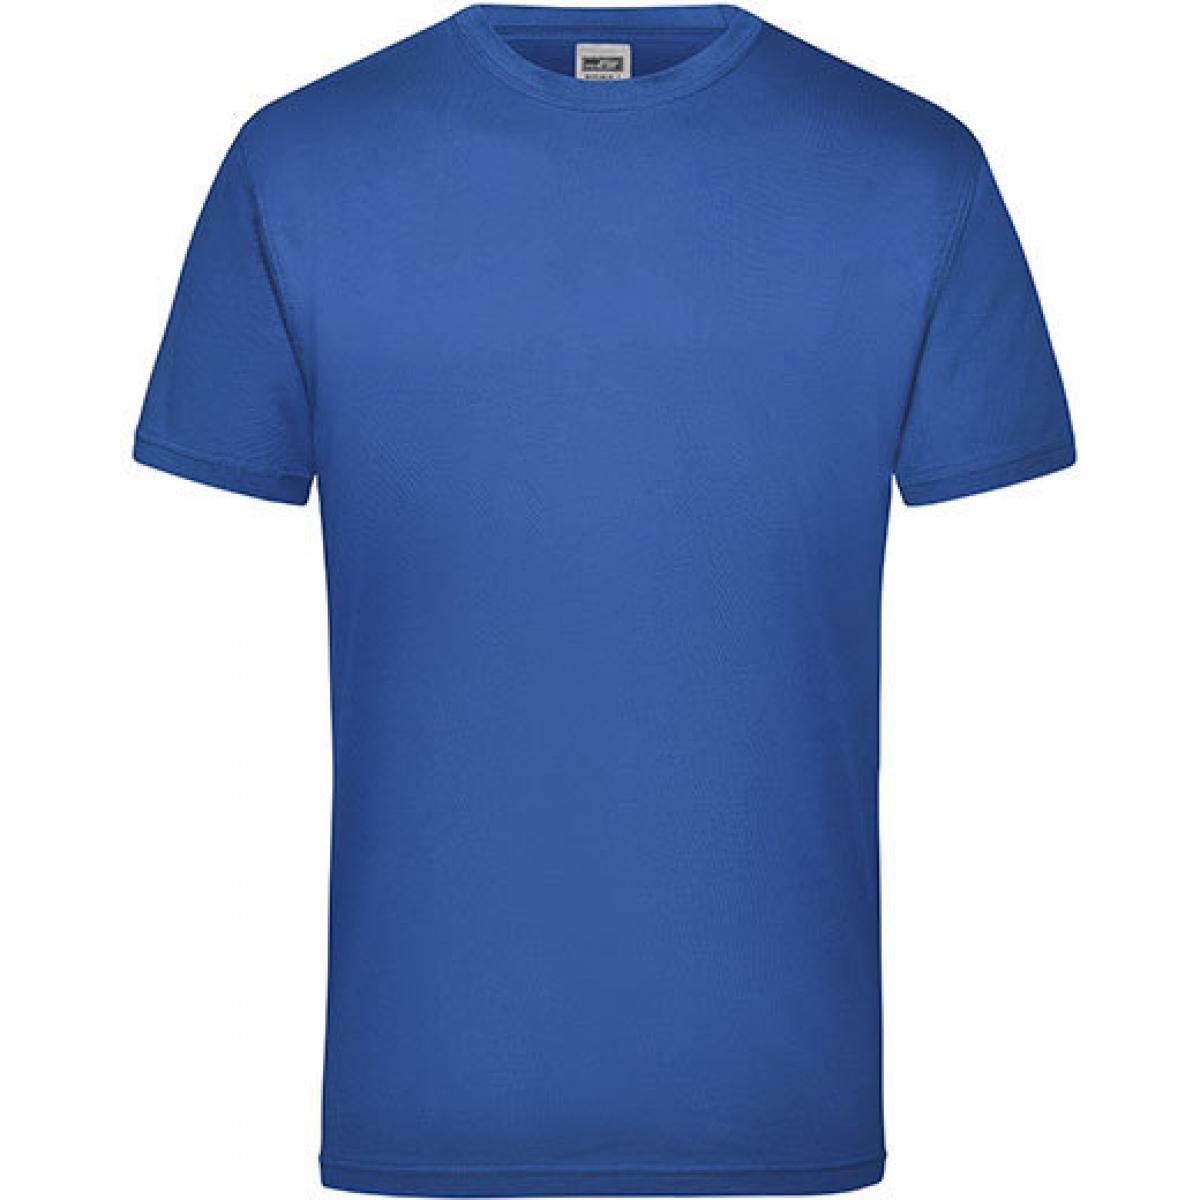 Hersteller: James+Nicholson Herstellernummer: JN 800 Artikelbezeichnung: Workwear Herren T-Shirt - waschbar bis 60 °C Farbe: Royal